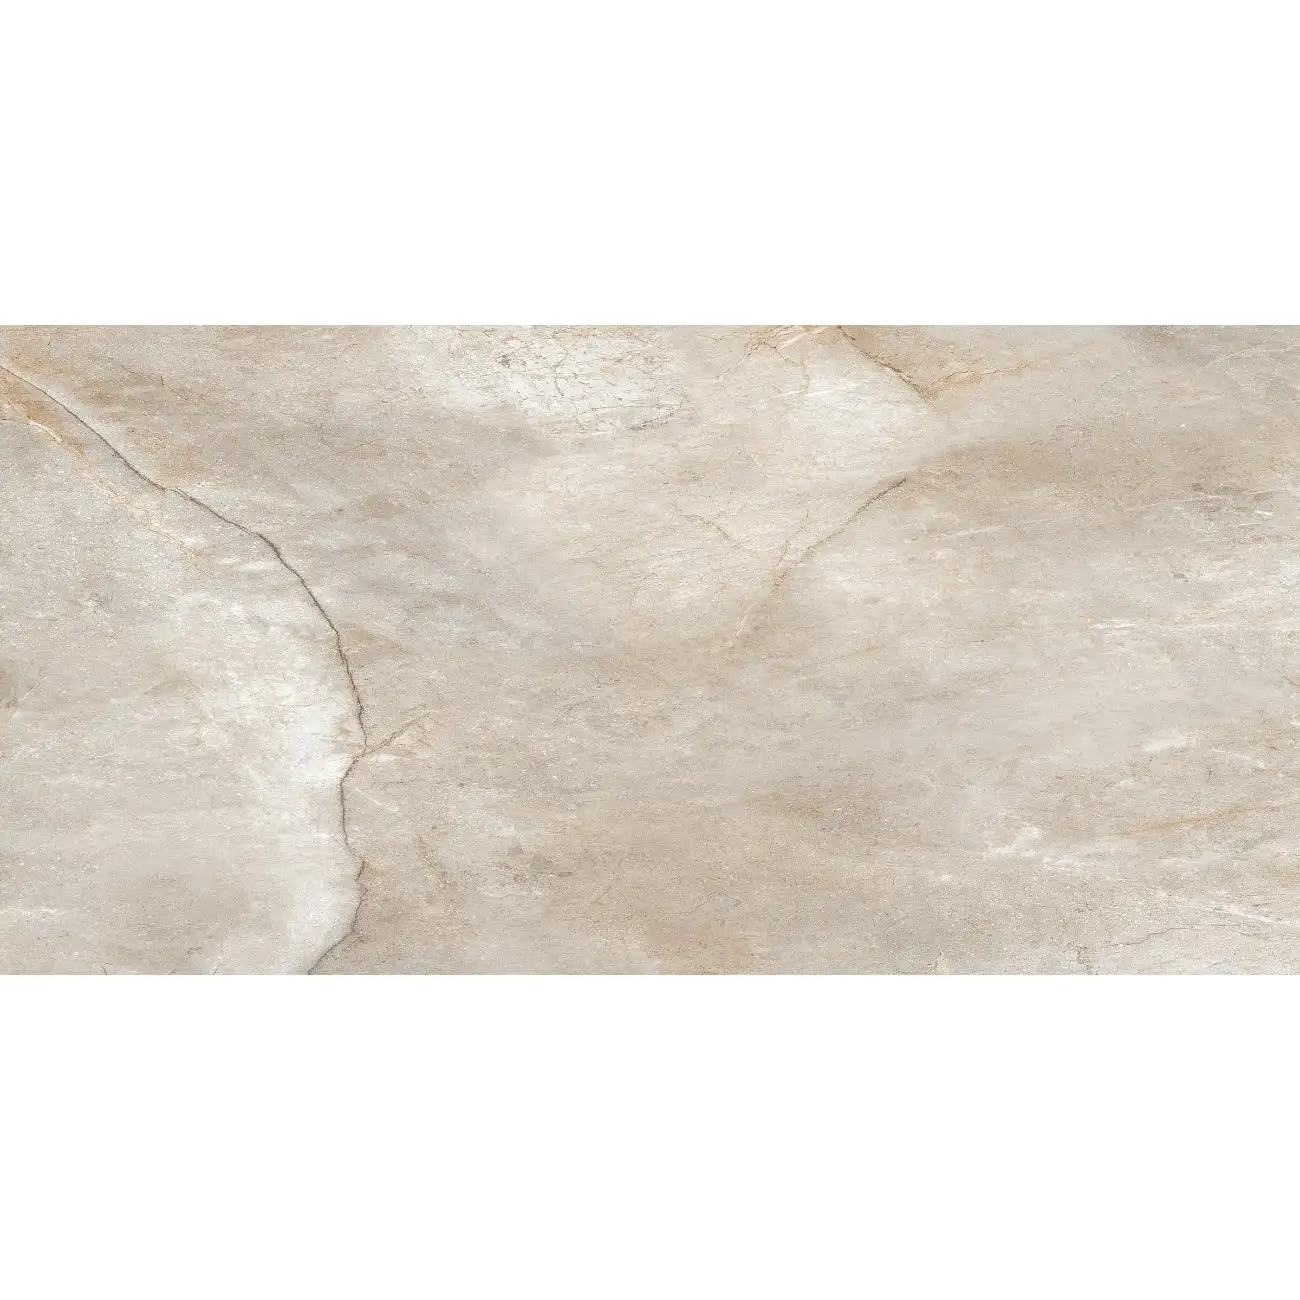 Pietra naturale prezzo all'ingrosso lastra di piastrelle per pavimento In porcellana piastrelle di cristallo di ceramica marmo bianco per pavimento interno